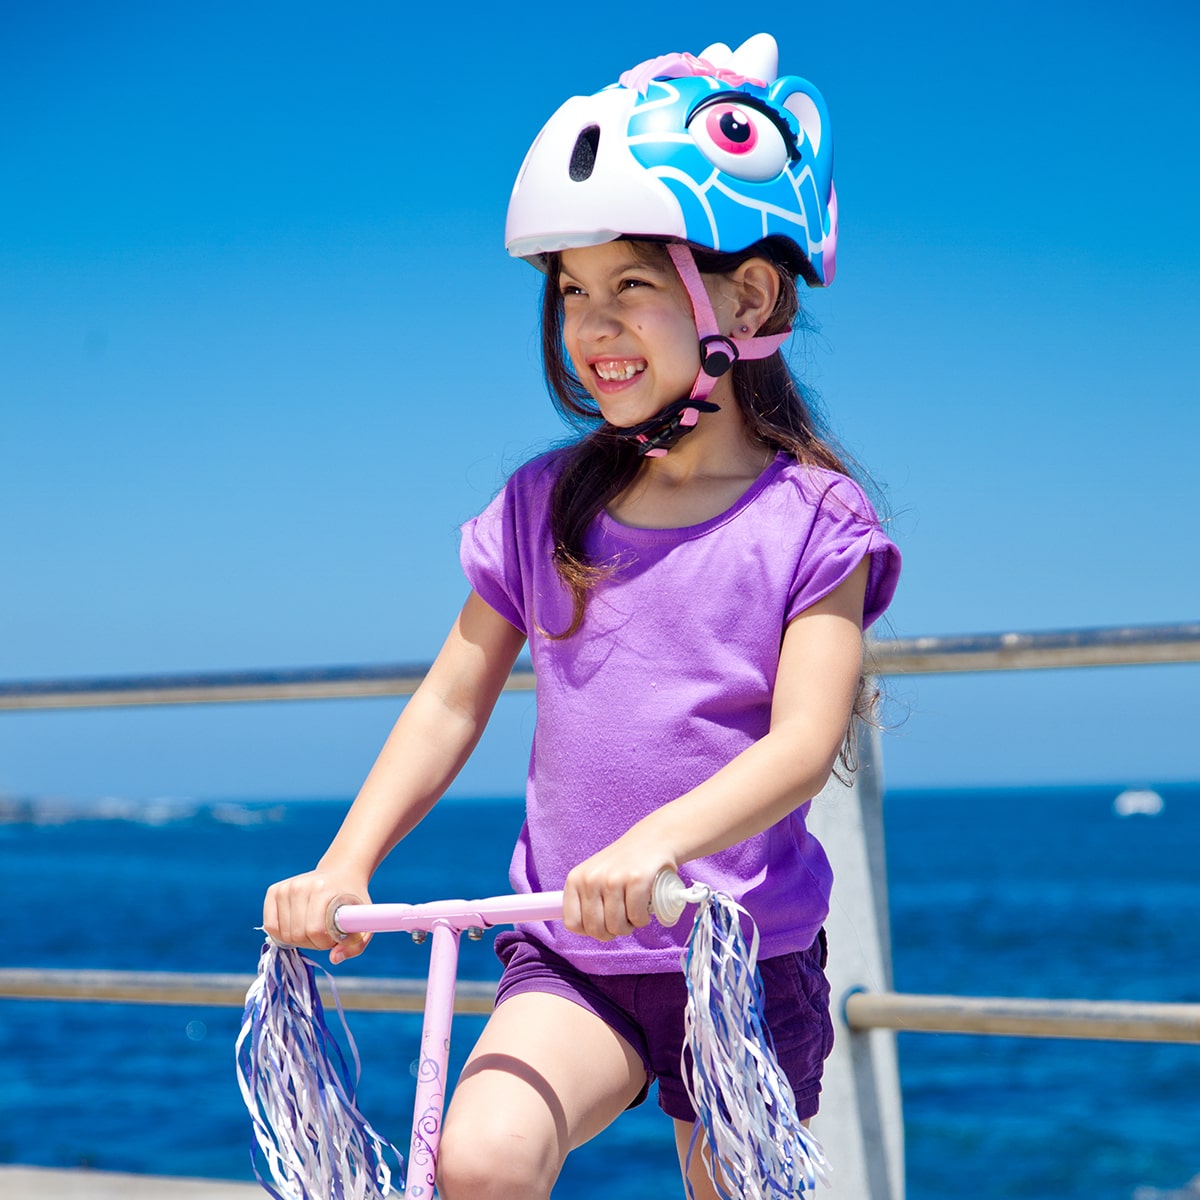 Casco De Bici Crazy Safety Jirafa Azul Certificado En1078 - Casco De Bicicleta Para Niños  MKP